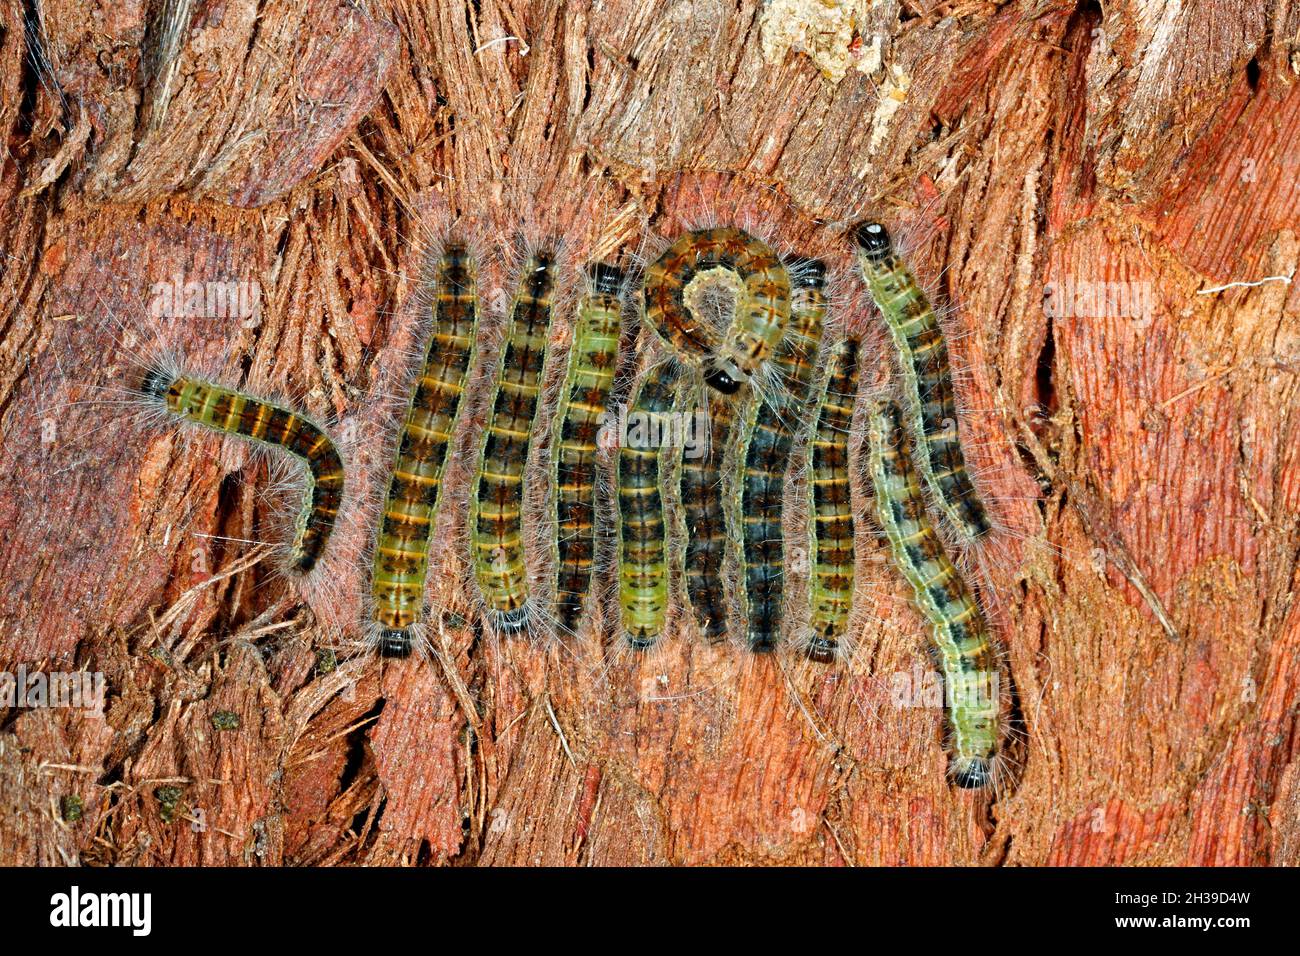 Gruppo di Moth Caterpillars sulla corteccia di un albero. Specie sconosciuta. Coffs Harbour, New South Wales, Australia Foto Stock